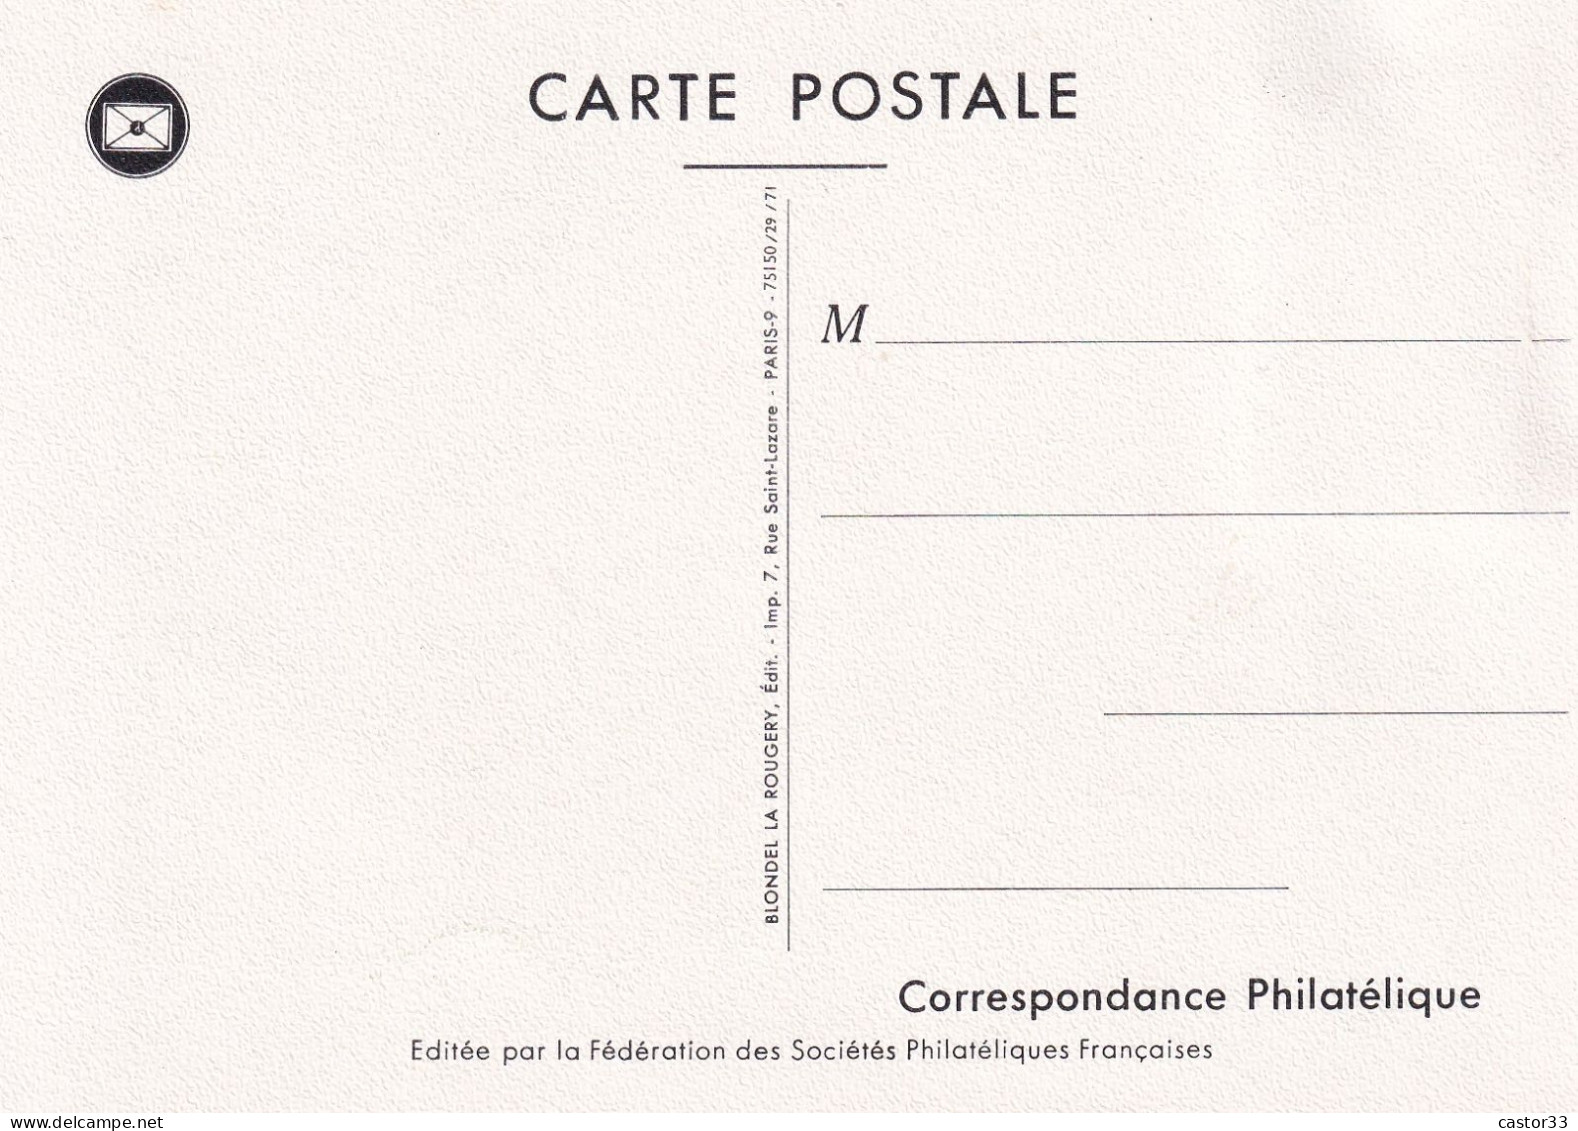 Journée Du Timbre 1971, Arcachon, La Poste Aux Armées 1914/1918 - Tag Der Briefmarke